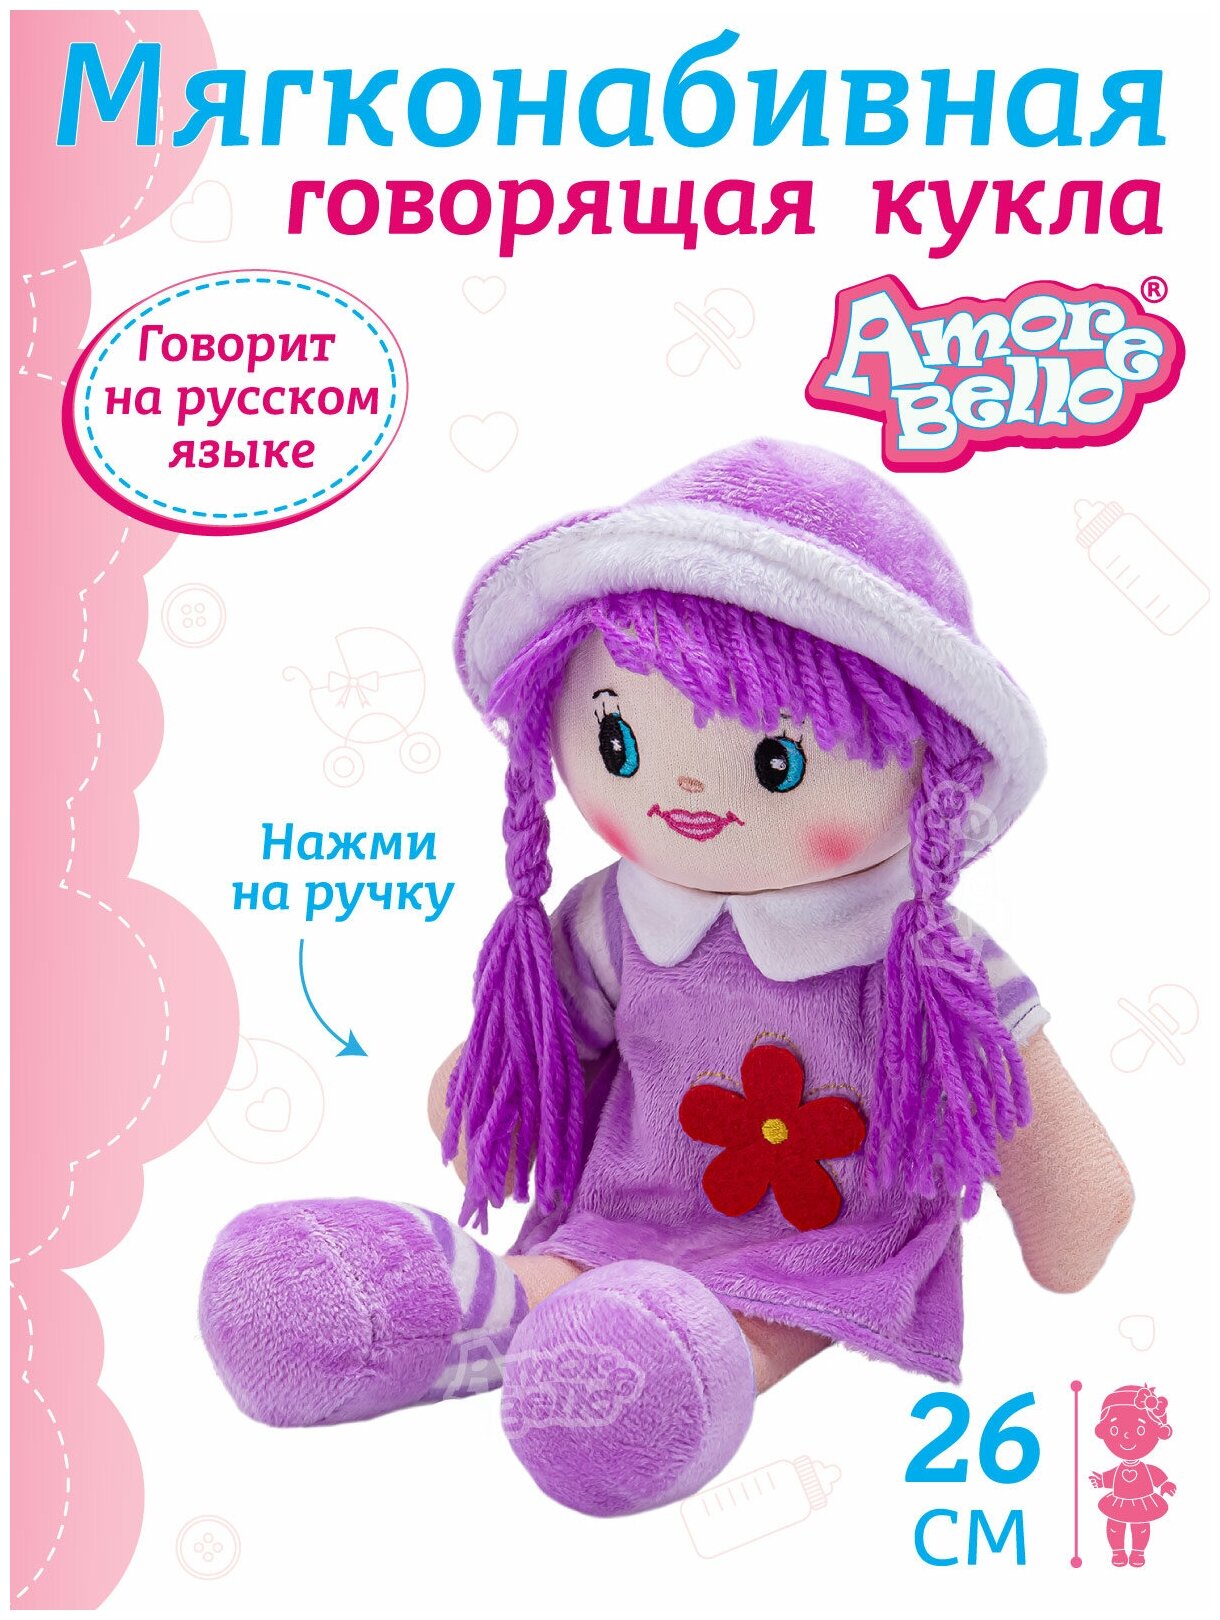 Кукла детская мягконабивная говорящая ТМ Amore Bello, 26 см, на батарейках, фразы на русском языке/стихотворение/песенка, JB0572063